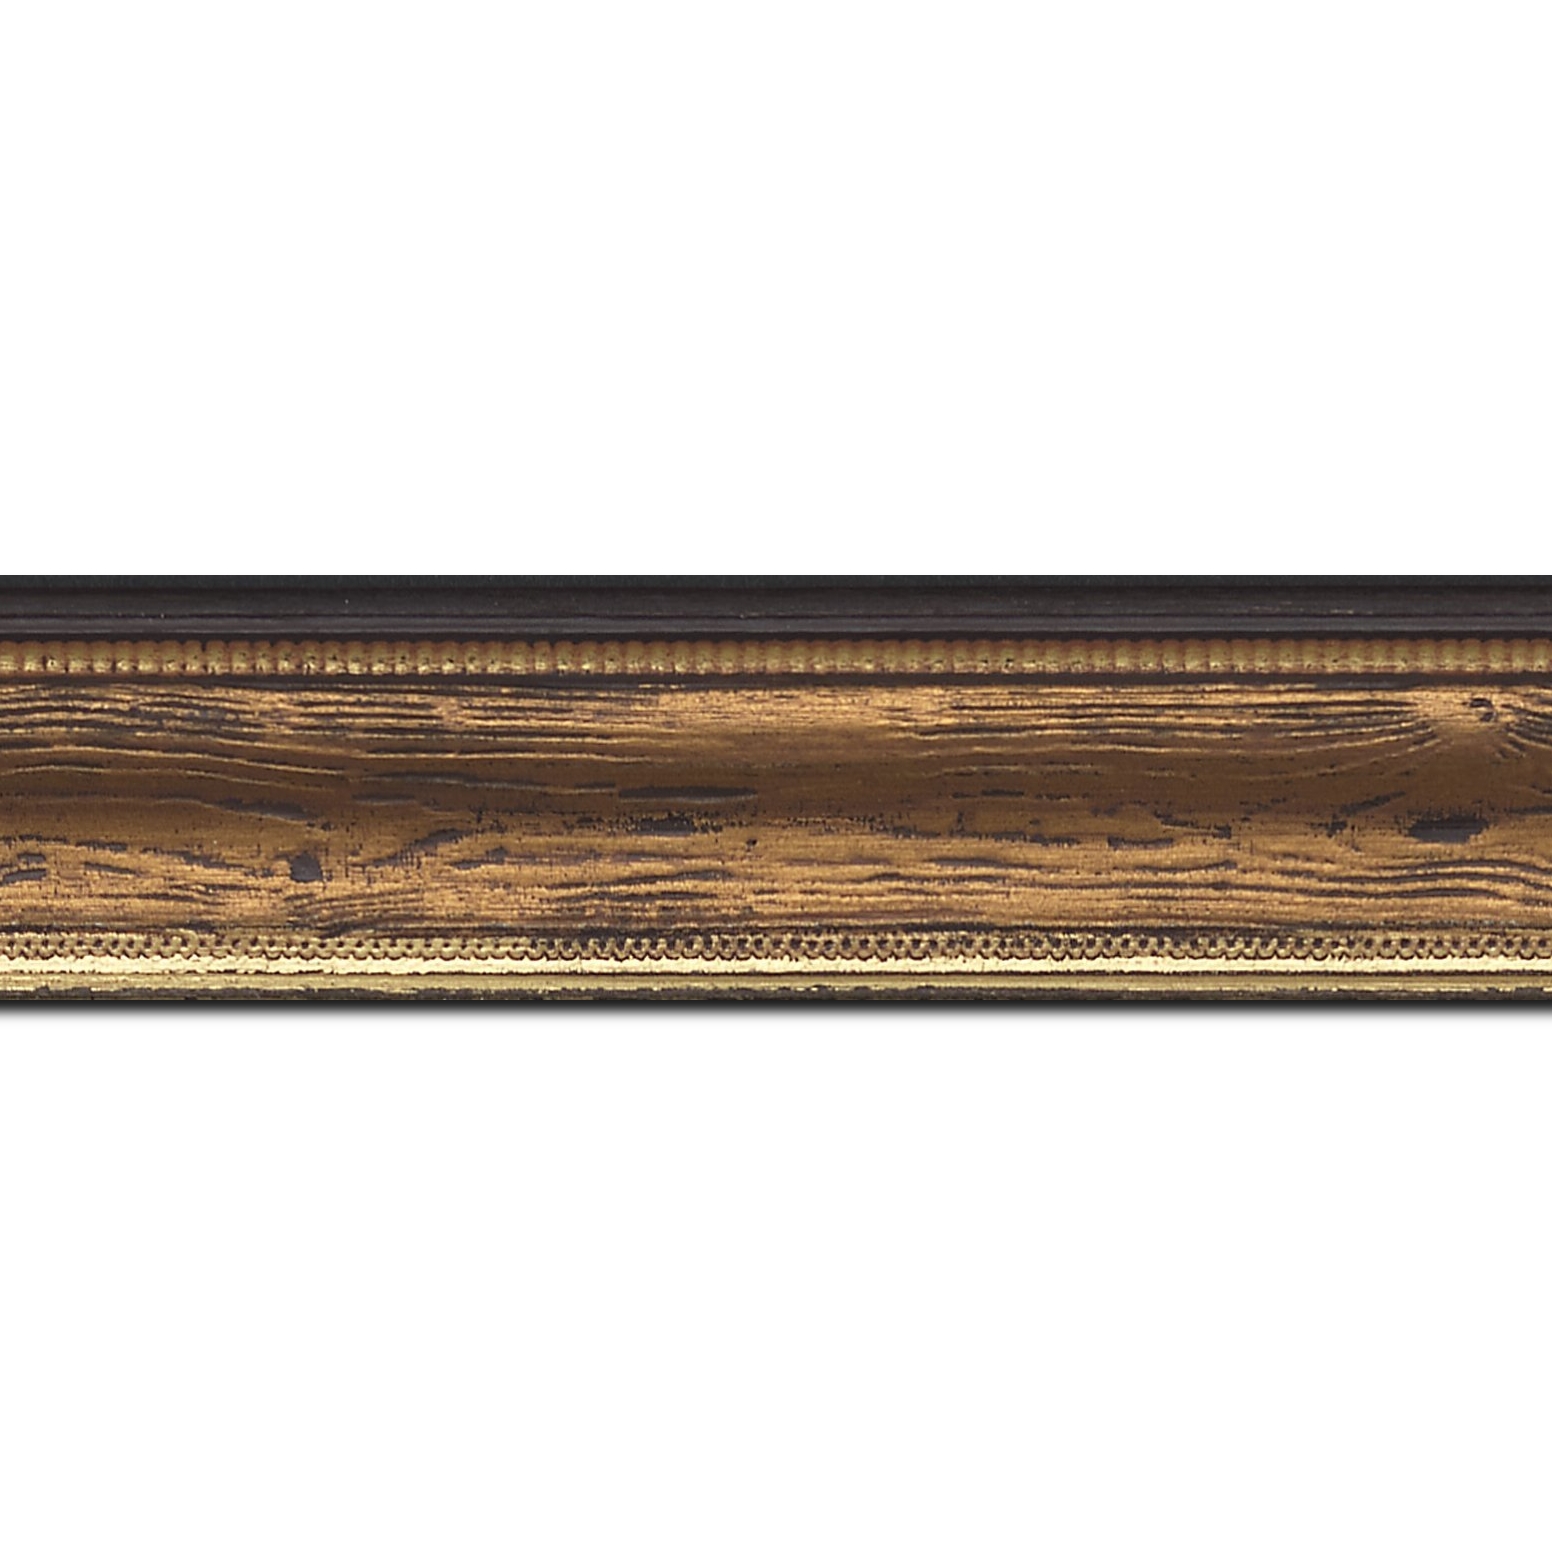 Baguette longueur 1.40m bois incurvé profil incurvé largeur 4.1cm couleur marron cuivré  aspect veiné liseret or